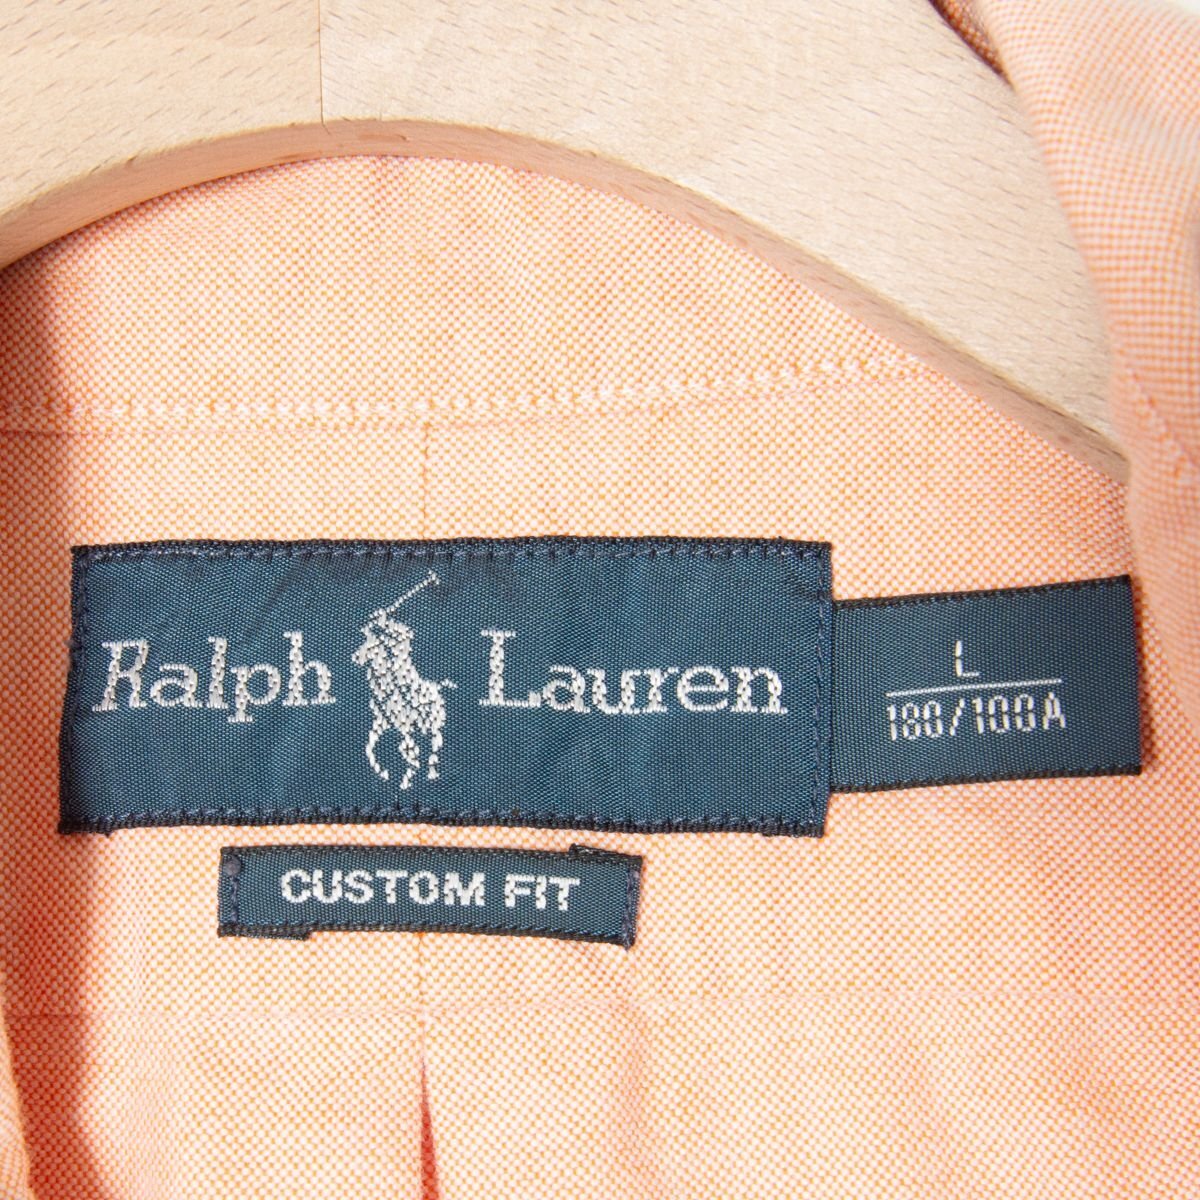 RALPH LAUREN ラルフローレン サイズL 長袖 ボタンダウンシャツ 刺繍 橙/オレンジ系 メンズ トップス カジュアル アメカジ シンプル 古着_画像6